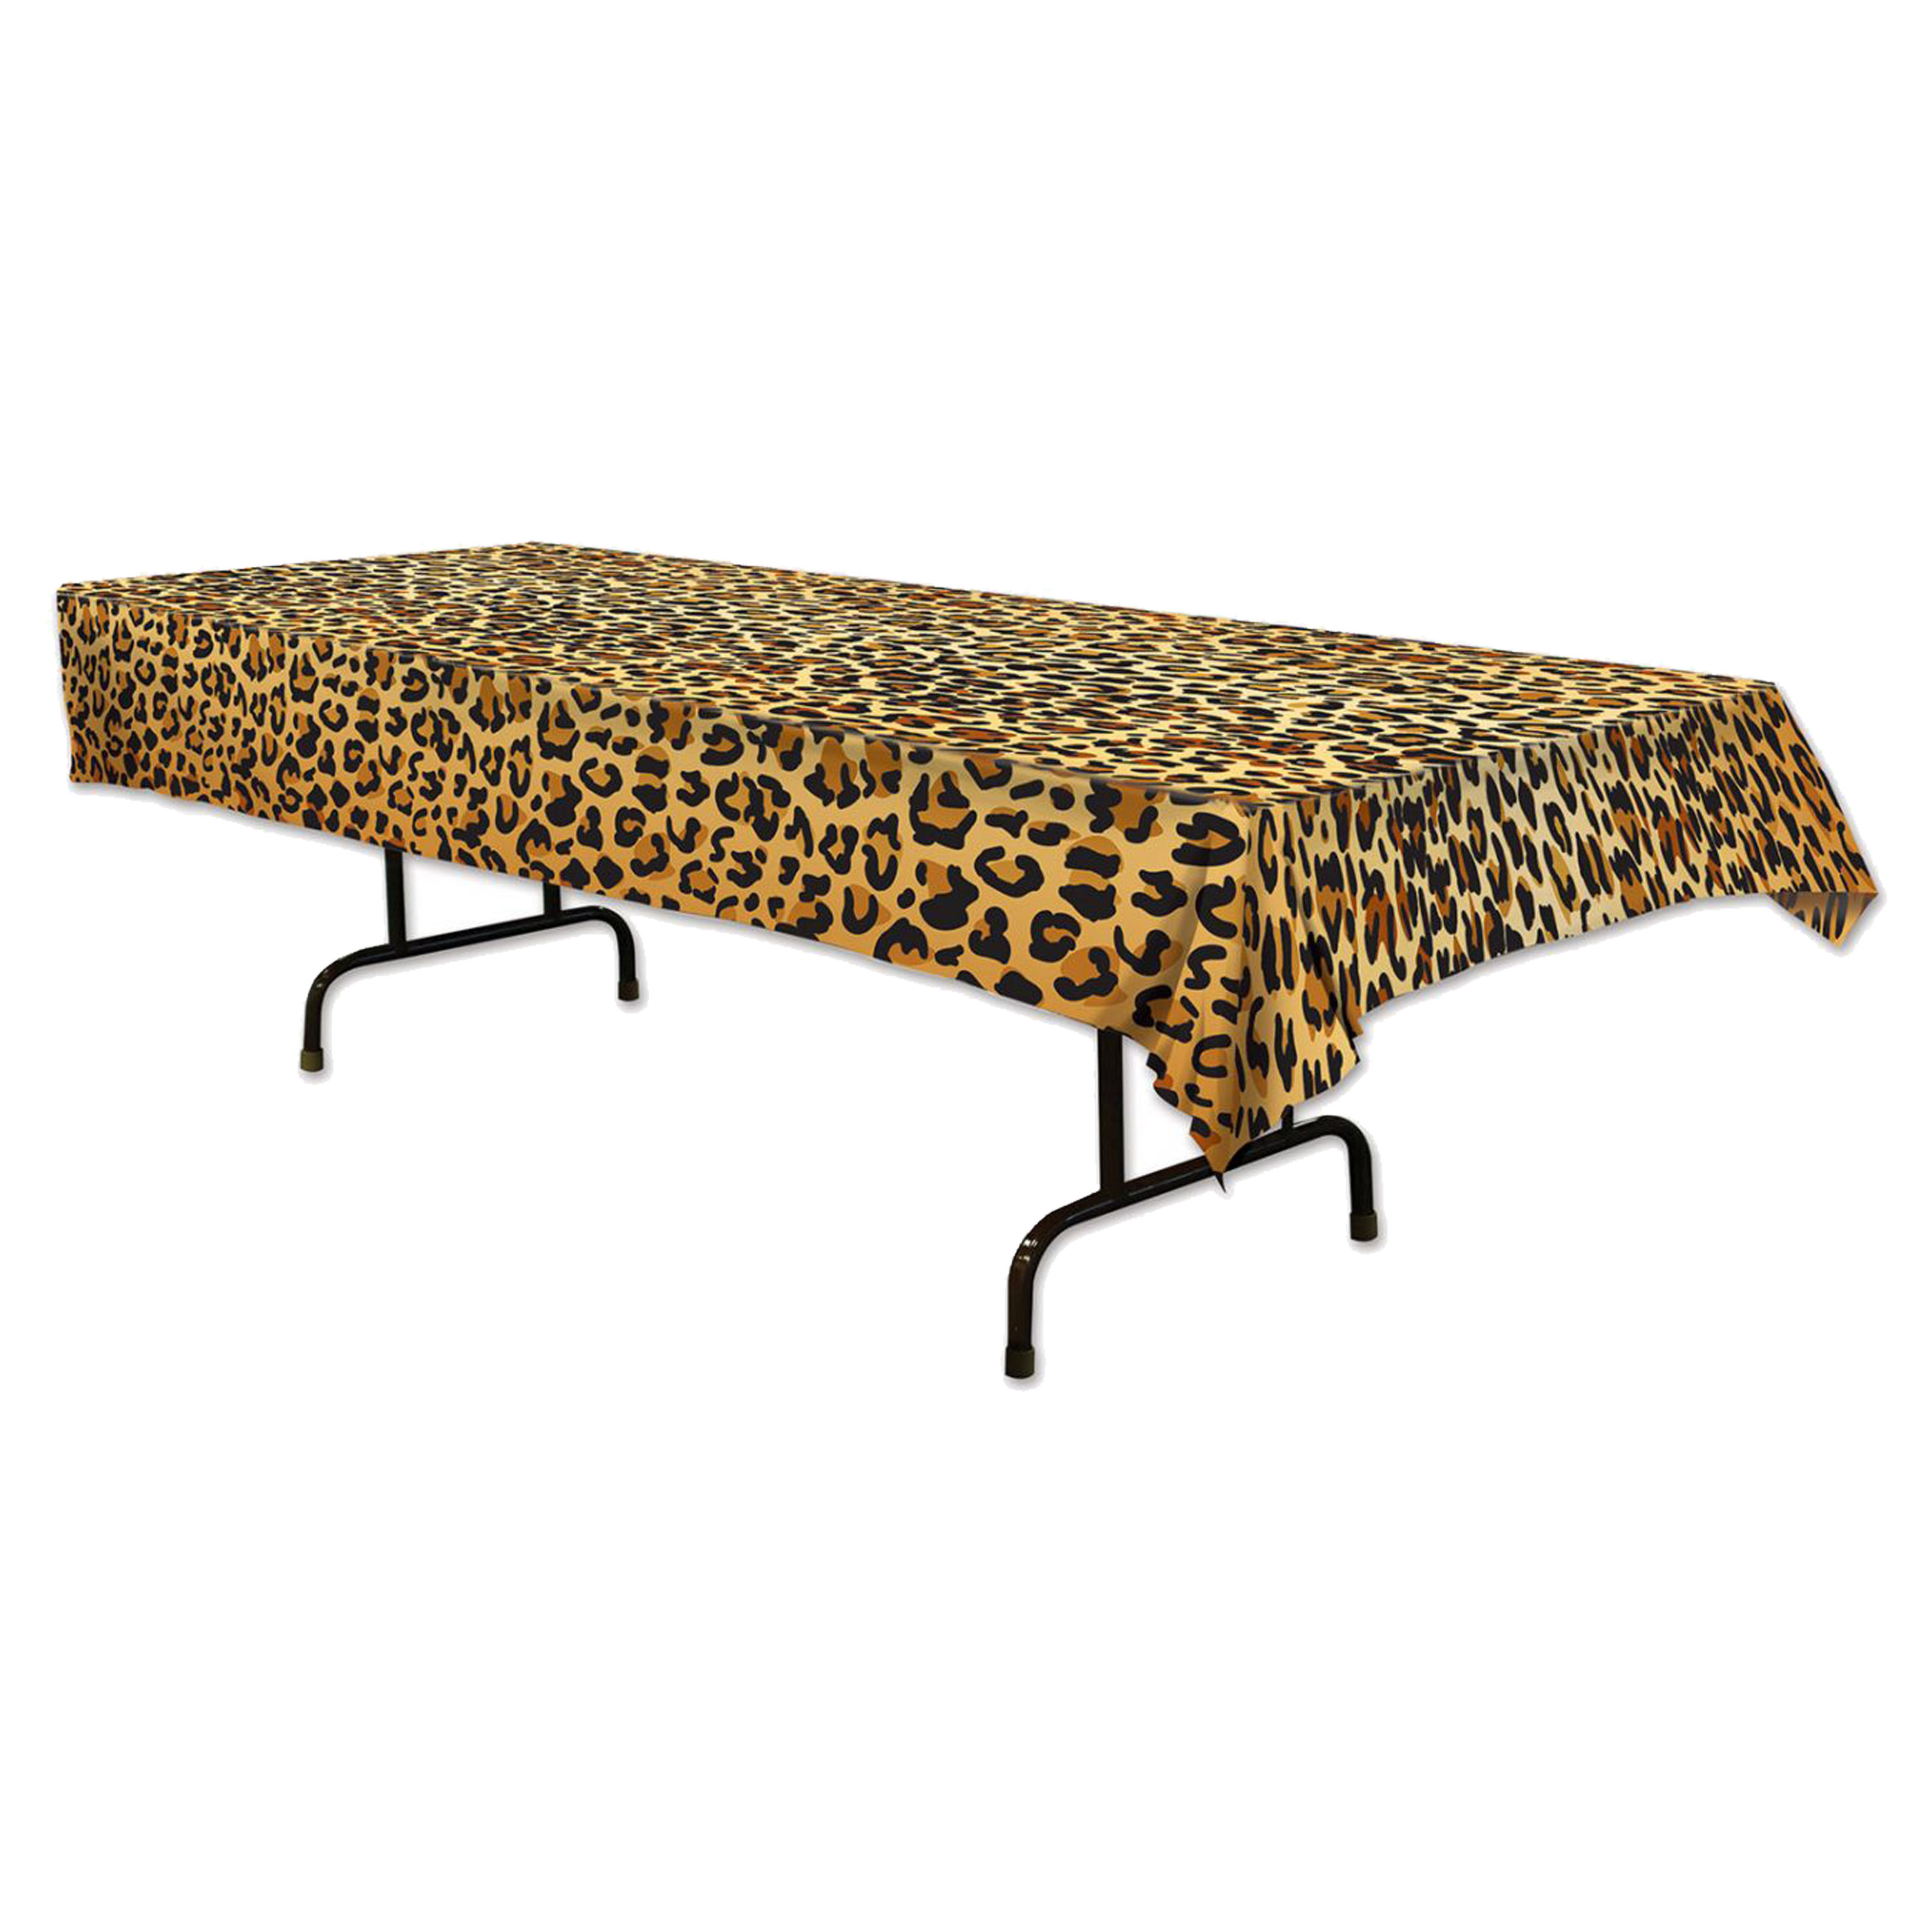 Tafellaken-tafelkleed luipaard 137 x 274 cm kunststof Jungle-dieren thema